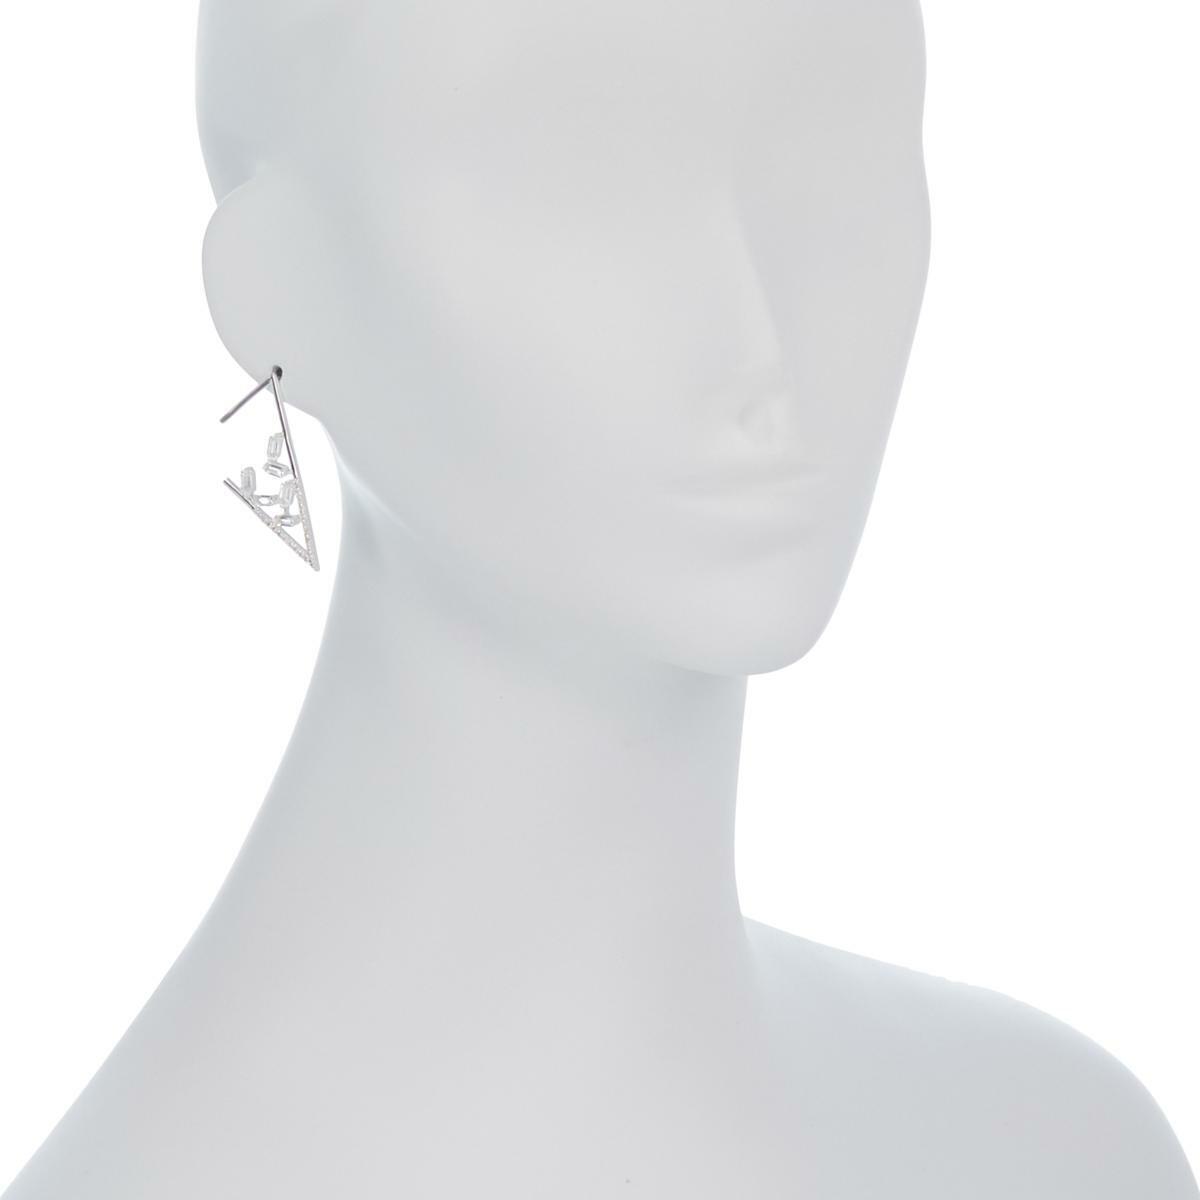 Herkimer Mines "Diamond" Quartz and White Topaz Earrings (363585828660)